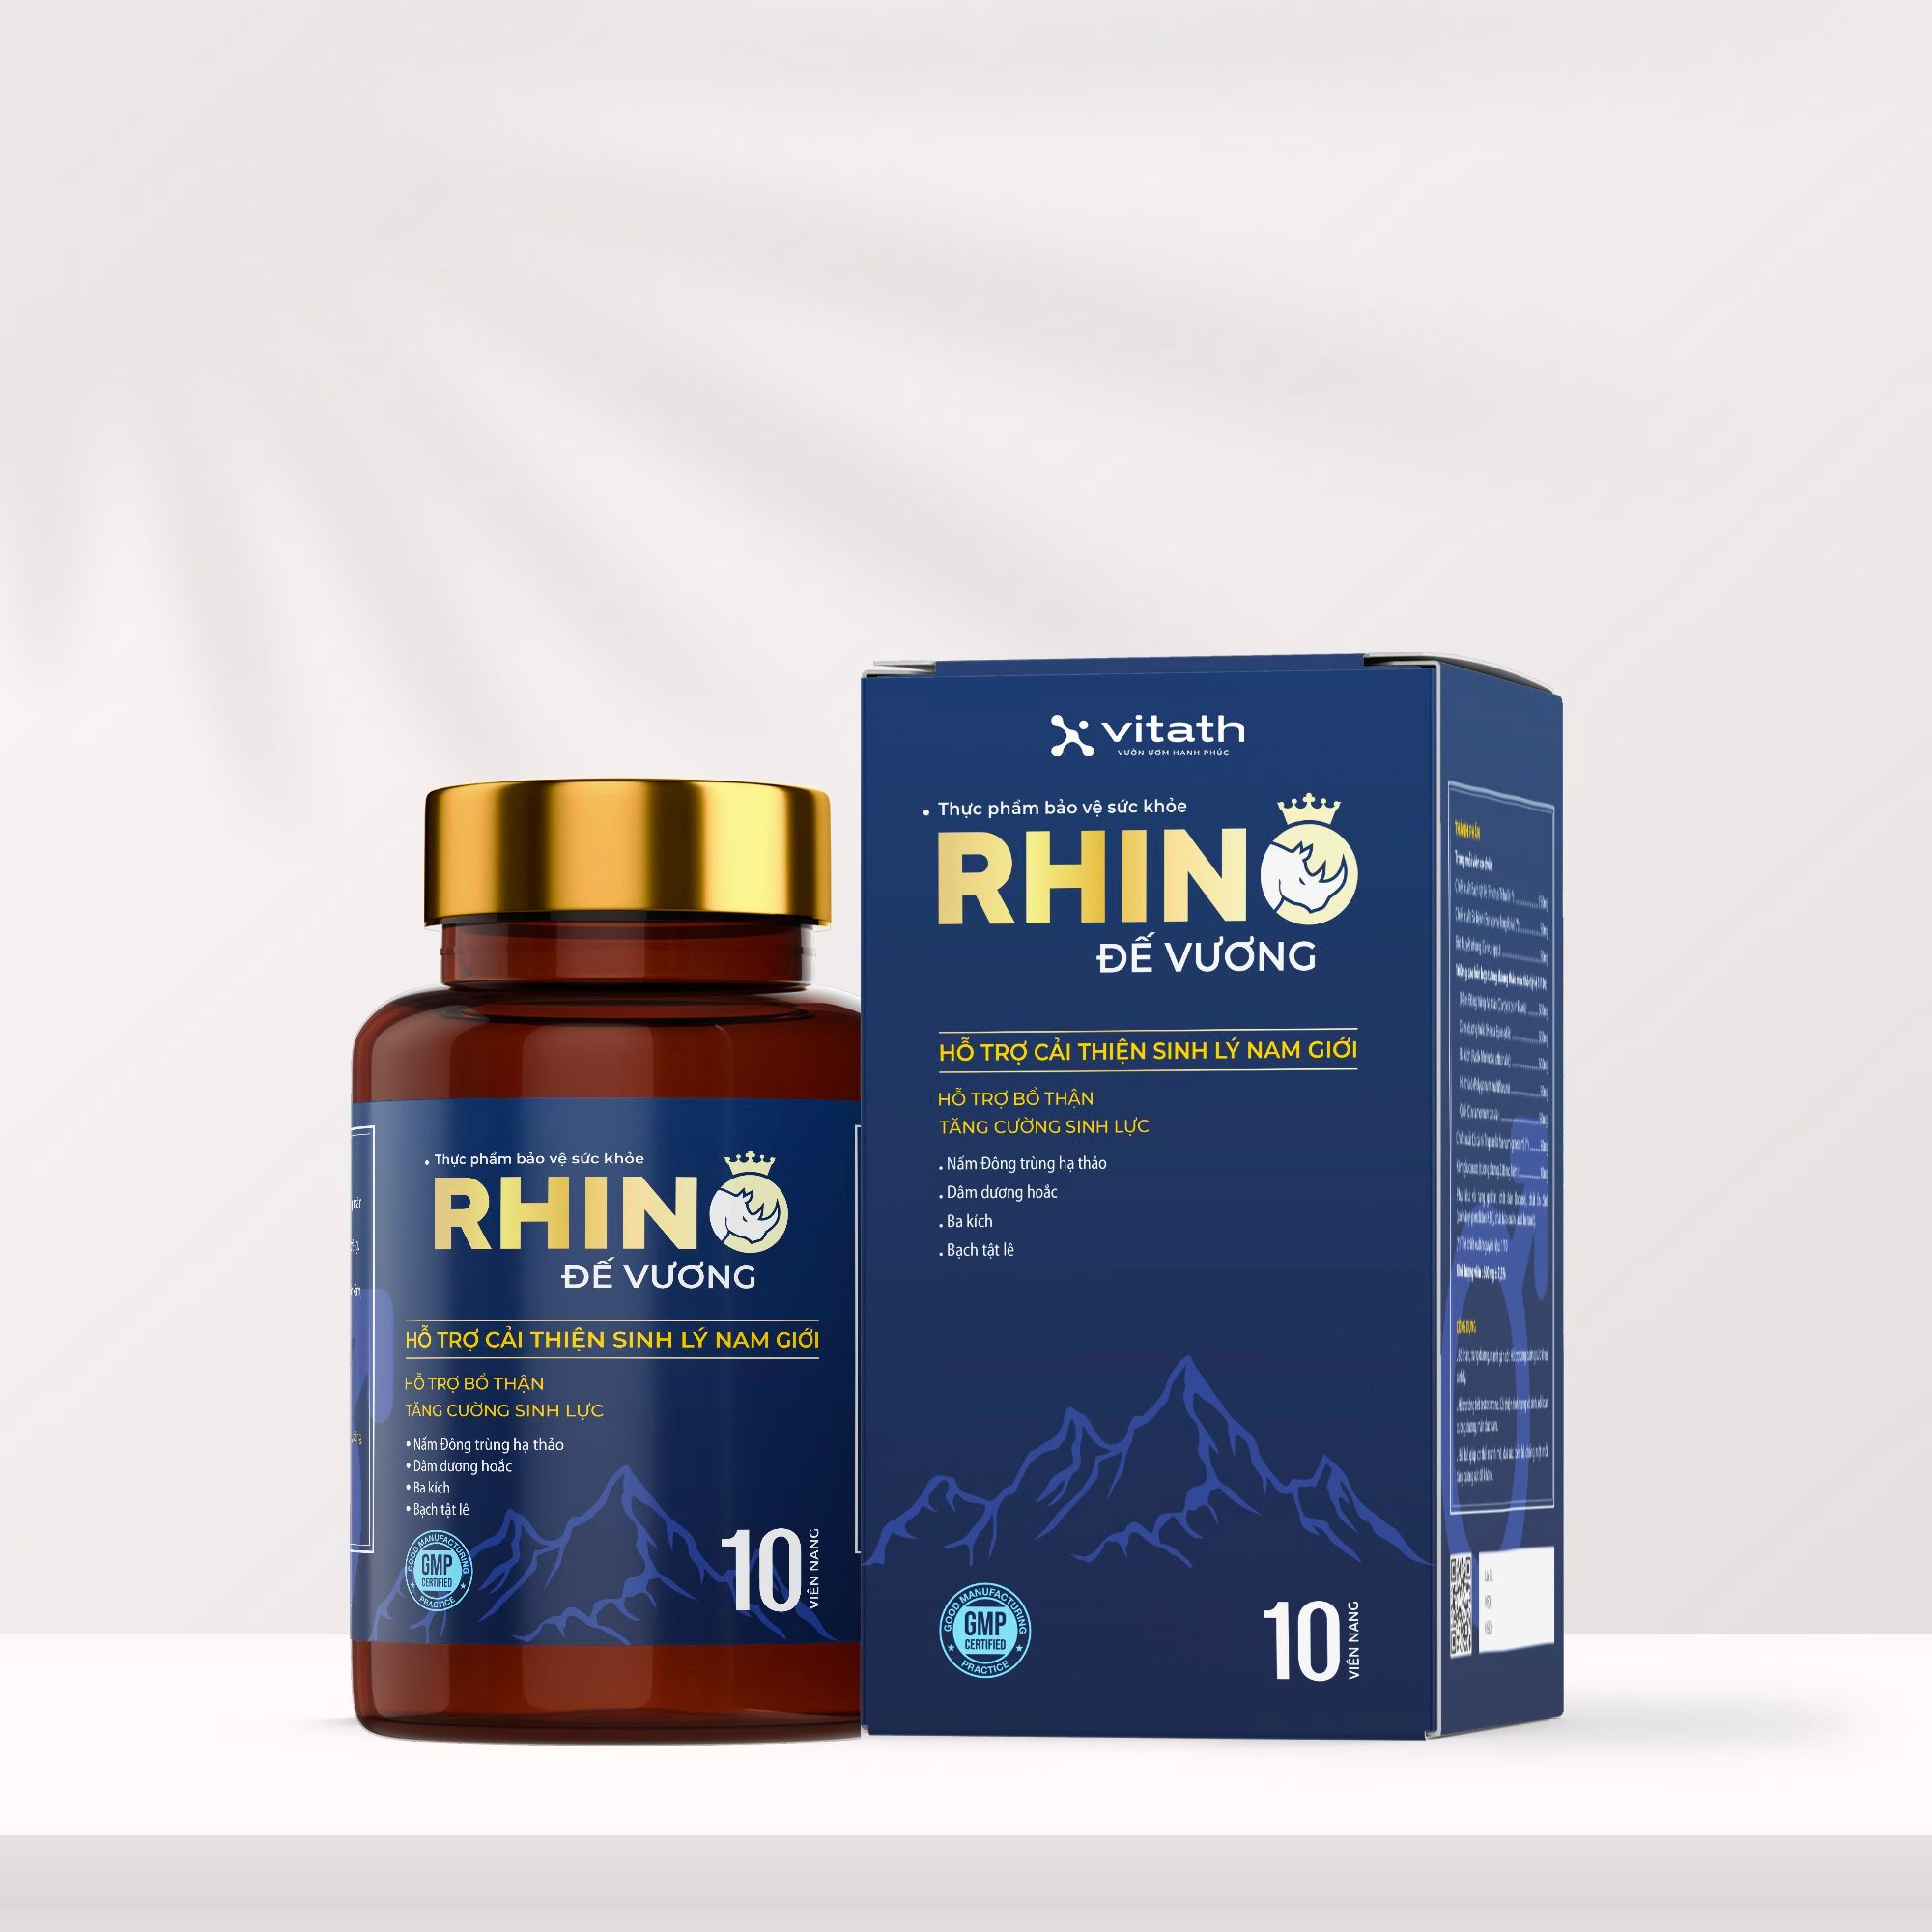 TPBVSK Rhino Đế Vương lọ 10 viên - Thương Hiệu Vitath